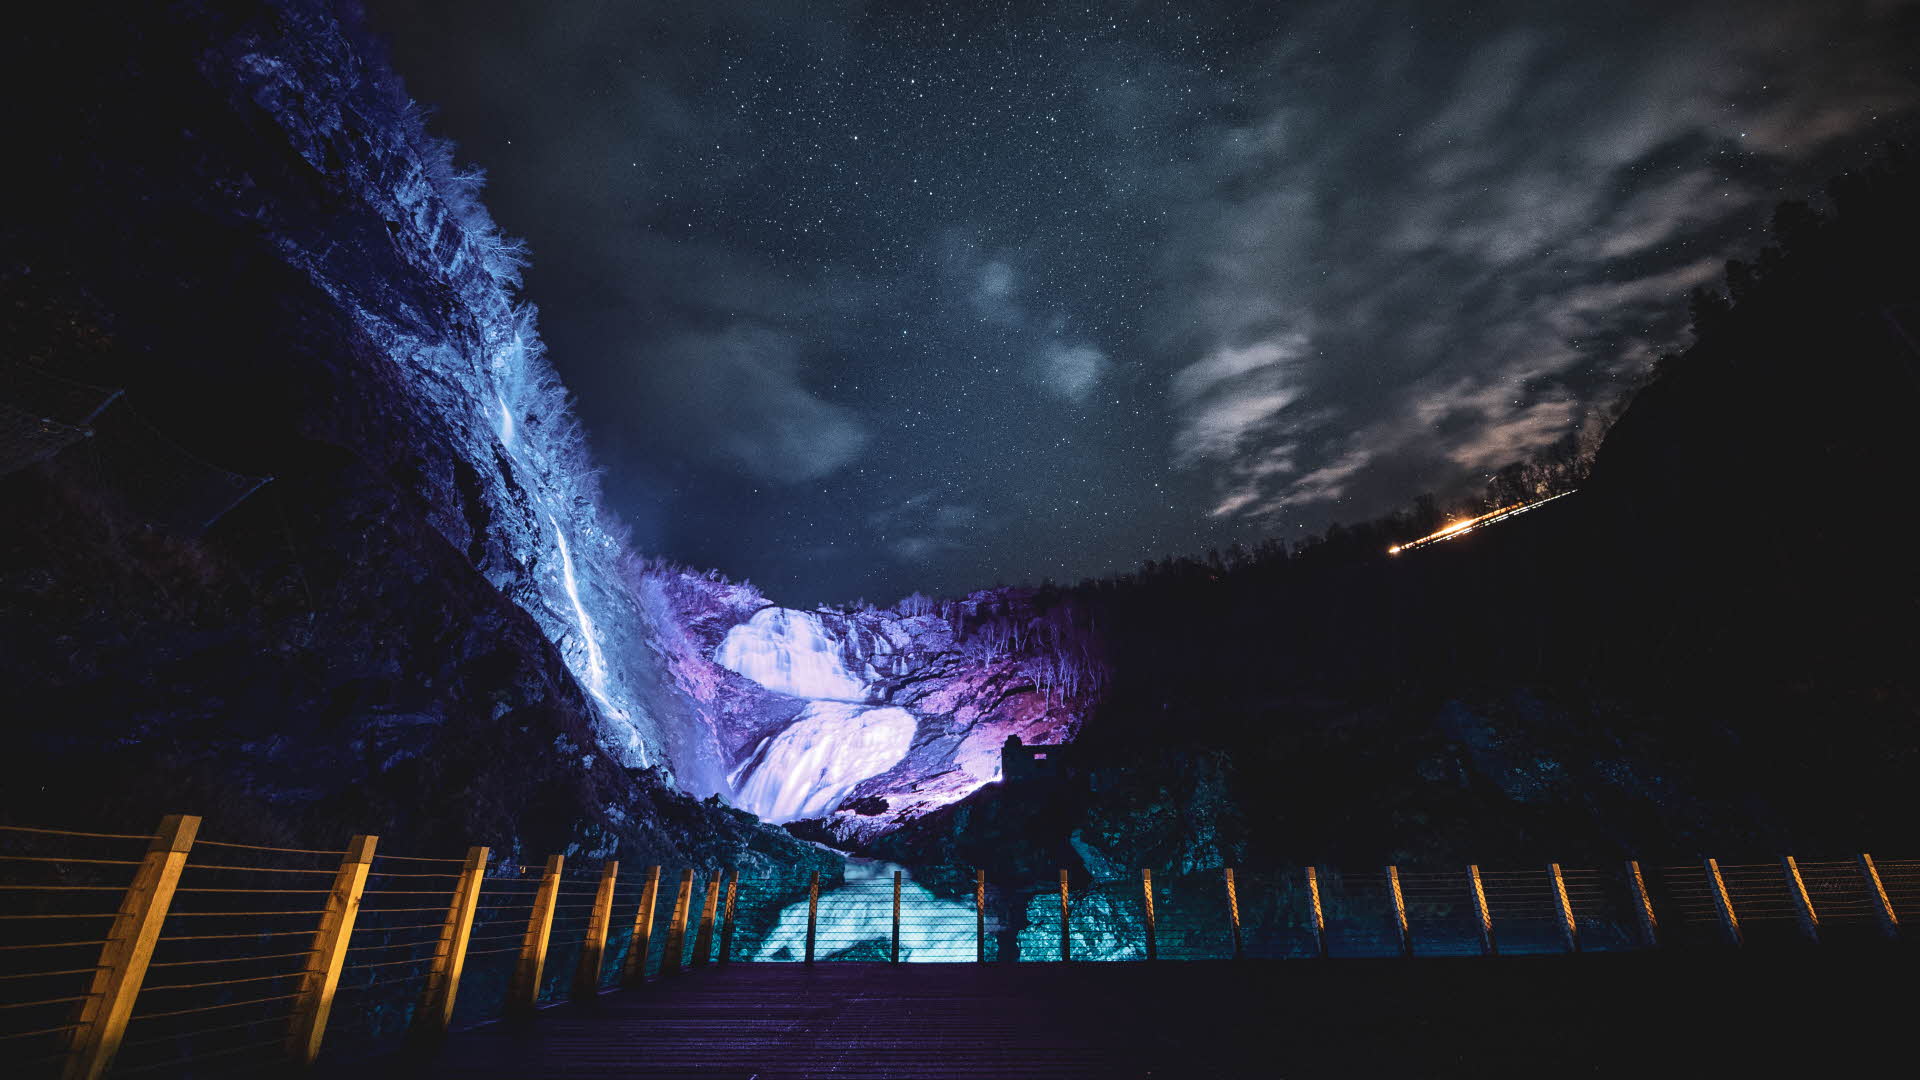 Kjosfossen waterfall illuminated by purple light in the dark.